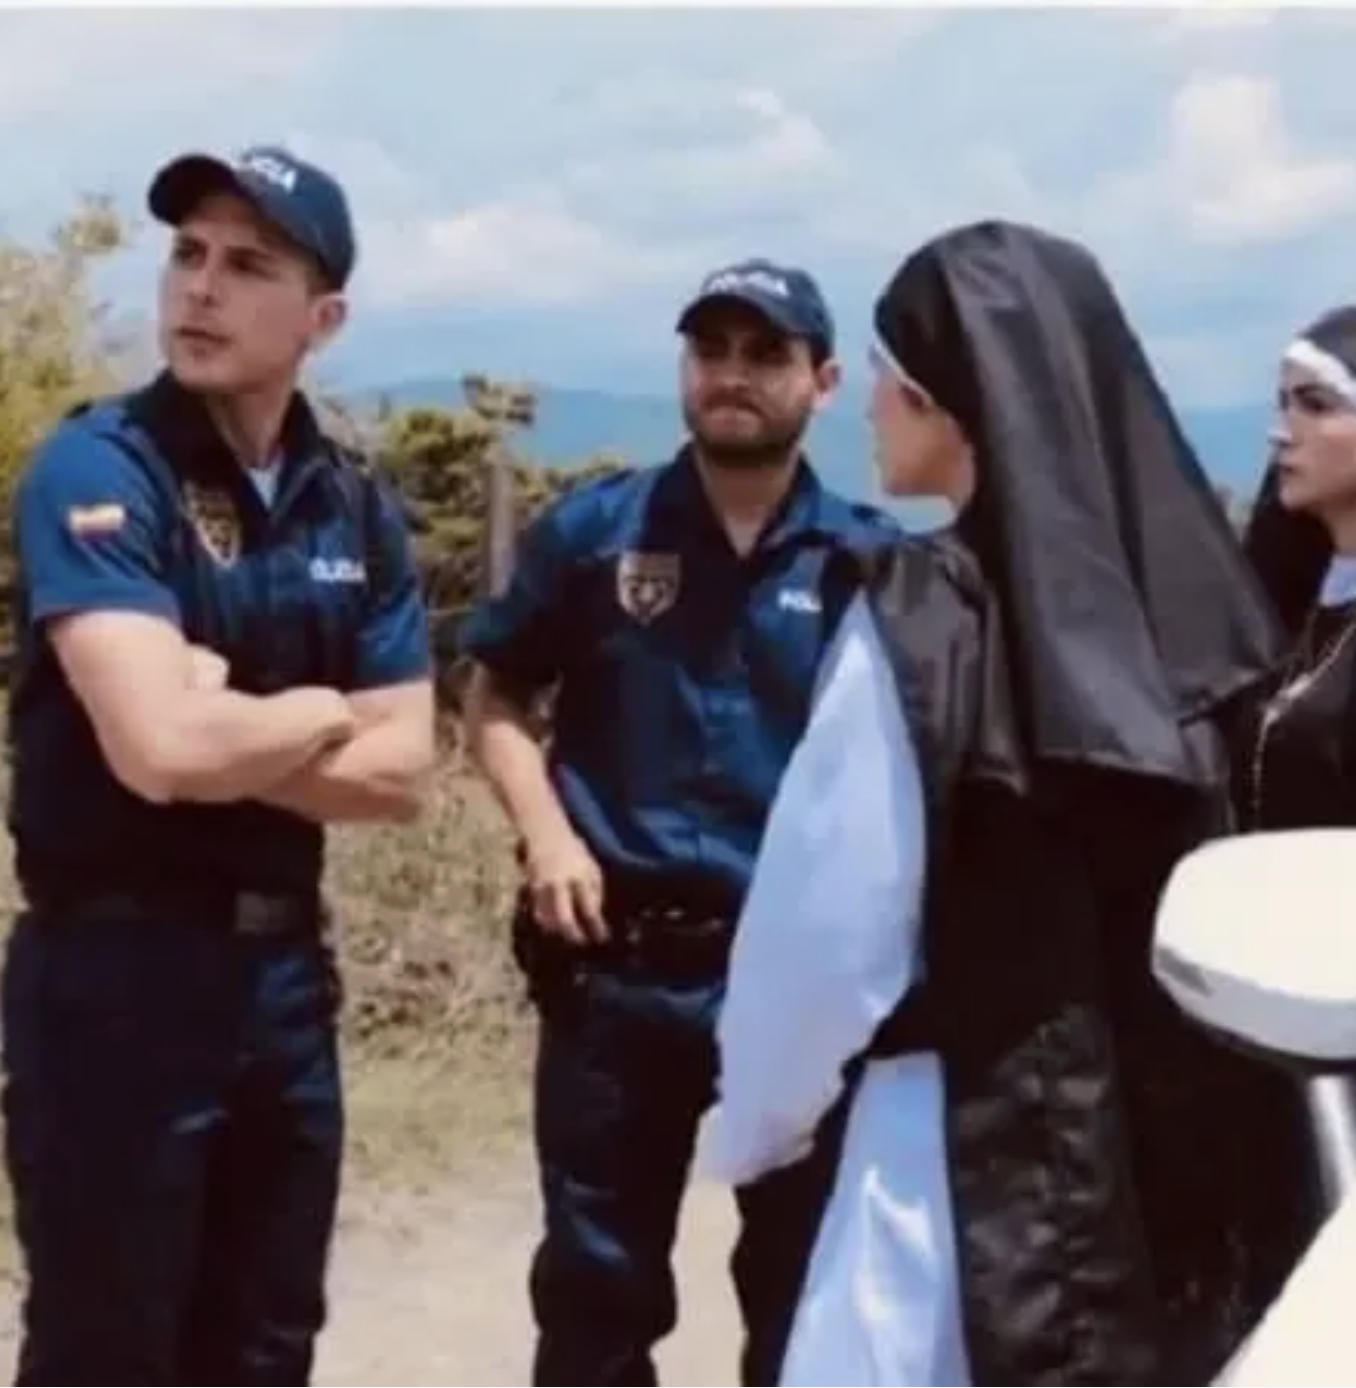 2 nuns and cops